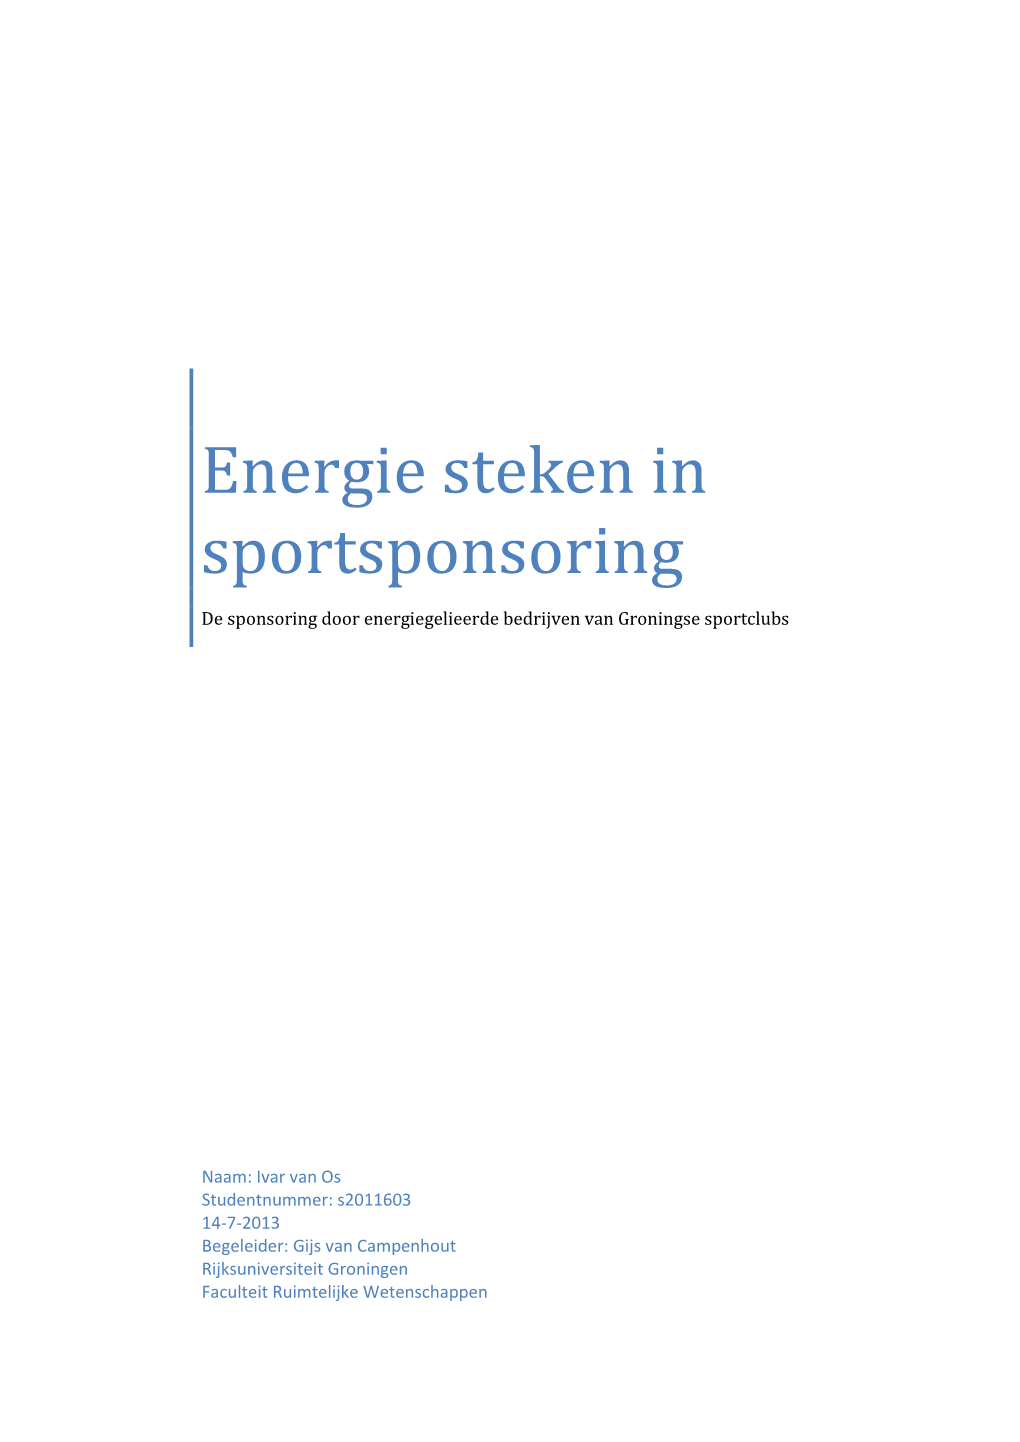 Energie Steken in Sportsponsoring